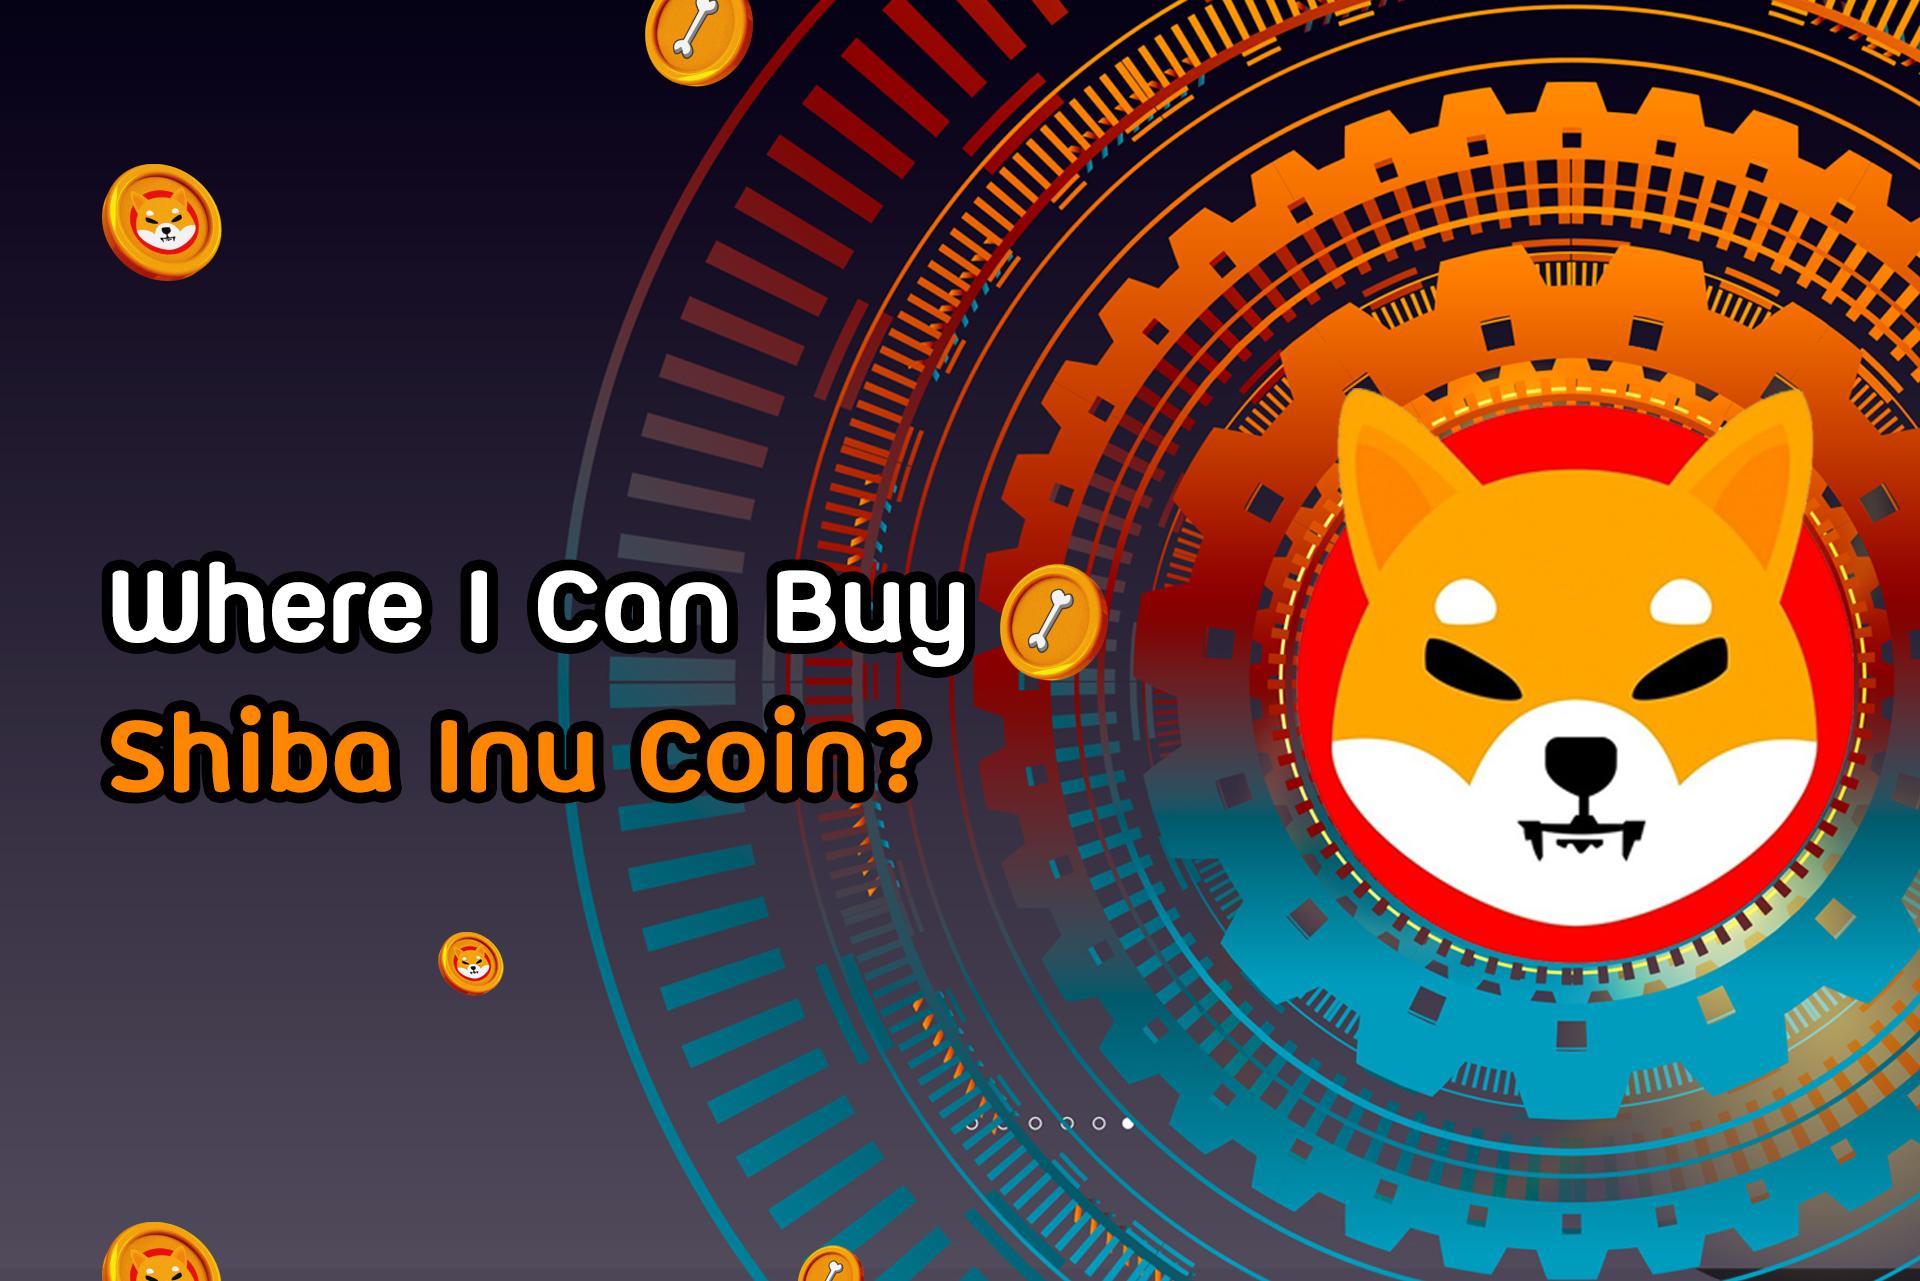 Where I can Buy Shiba Inu Coin? | SHIBA INU COIN